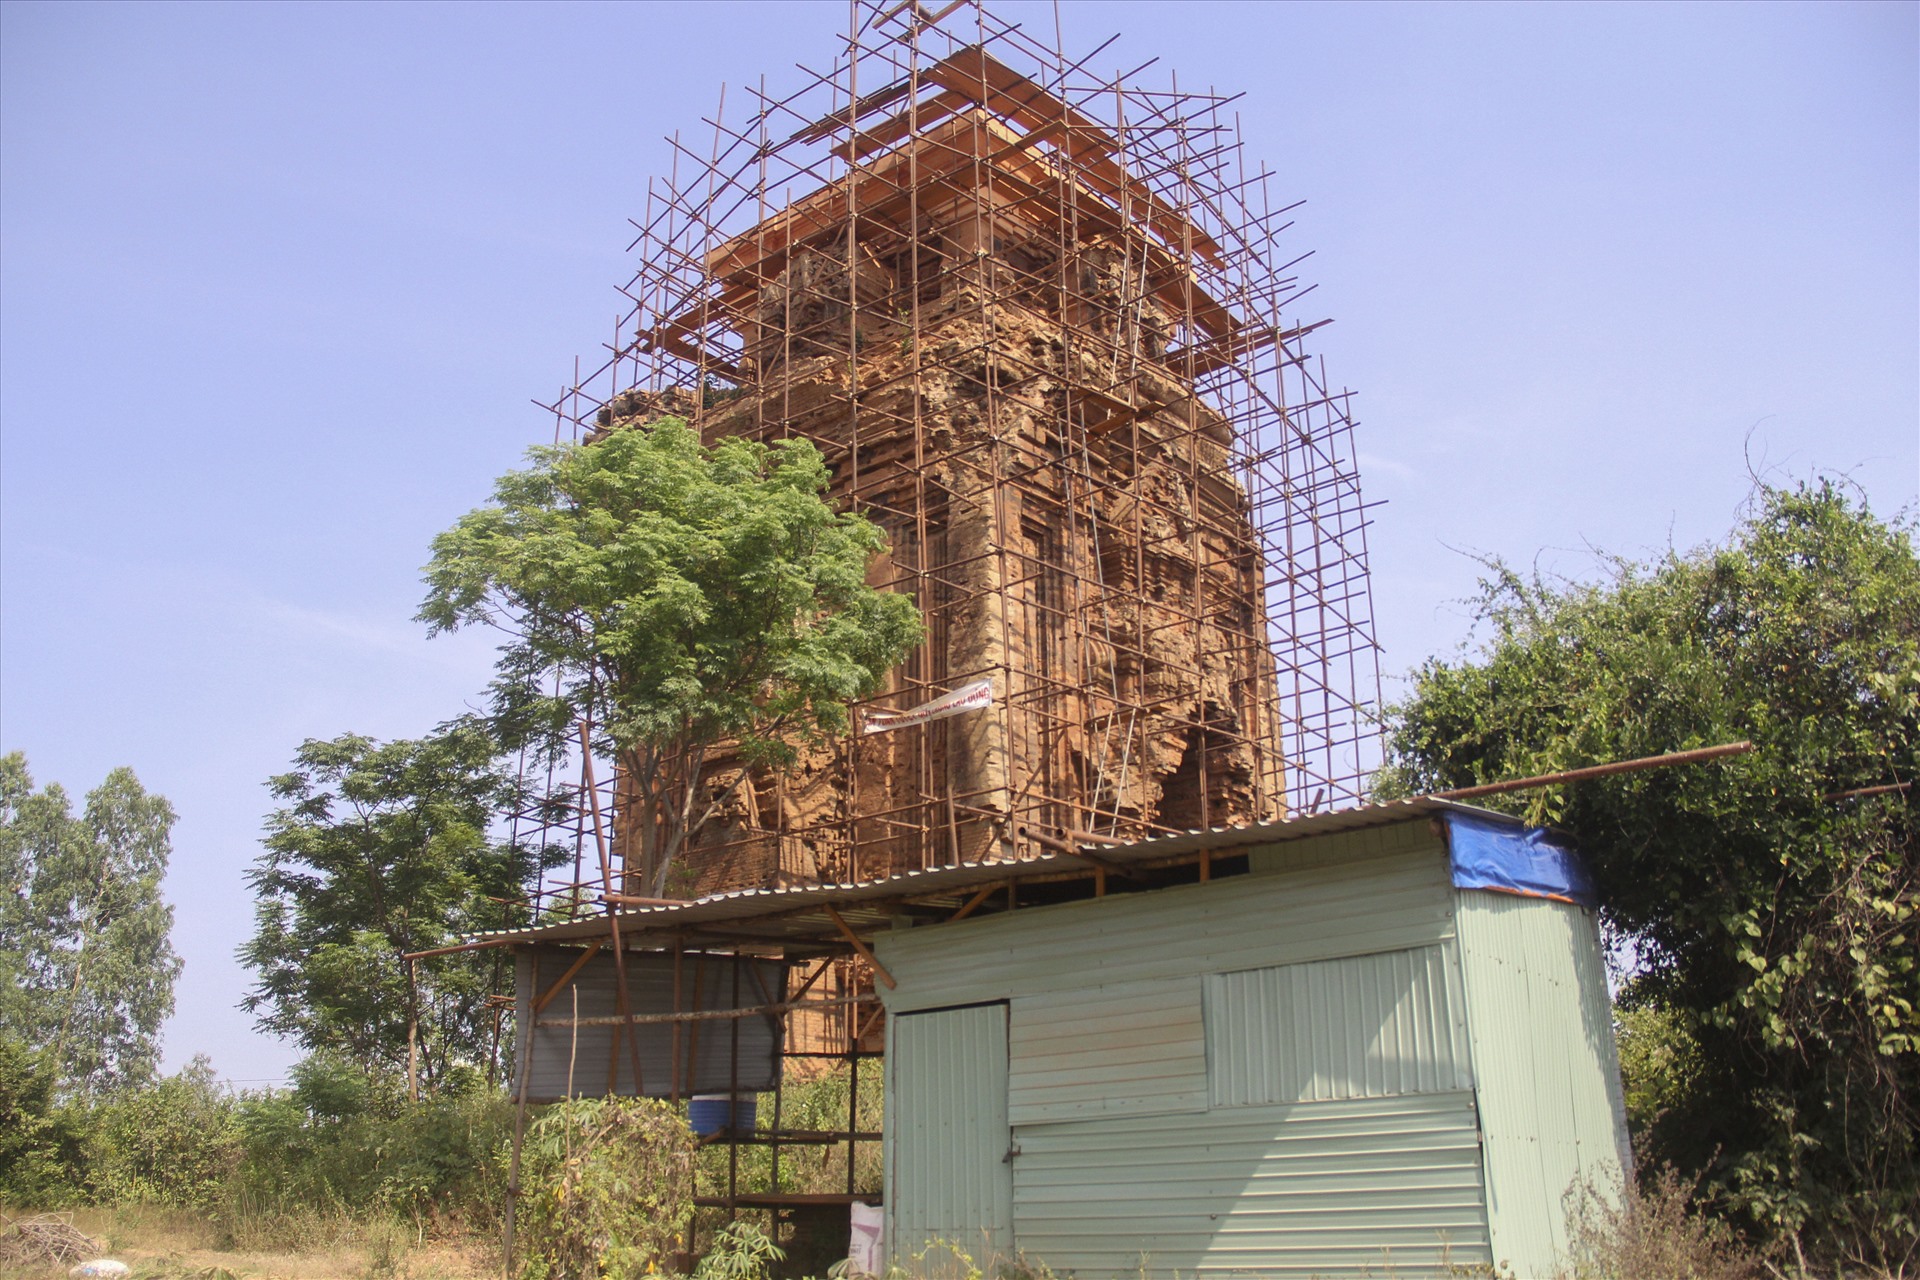 Theo ông Bùi Tĩnh - Giám đốc Bảo tàng Bình Định, tháp Thủ Thiện chưa được đầu tư bảo tồn, tu bổ nào lớn, chỉ có gia cố chống sụp đổ từ những năm giữa thập niên 1990 đối với các phần chân tháp, cửa giả.